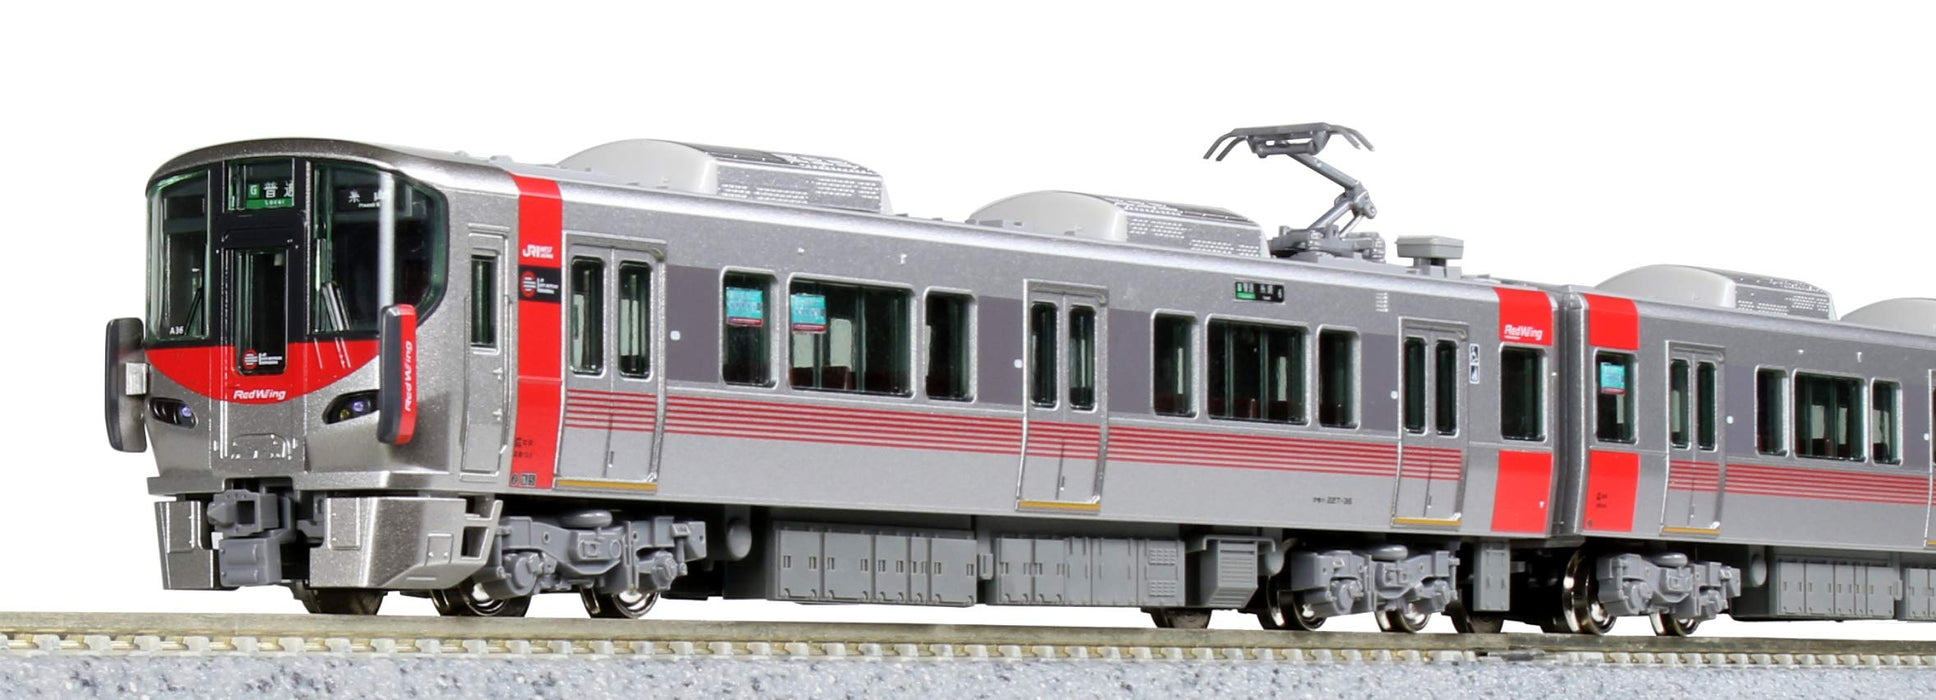 Kato N Gauge 6-Car Set 227 Series 0 Red Wing 10-1629 Railway Train Model